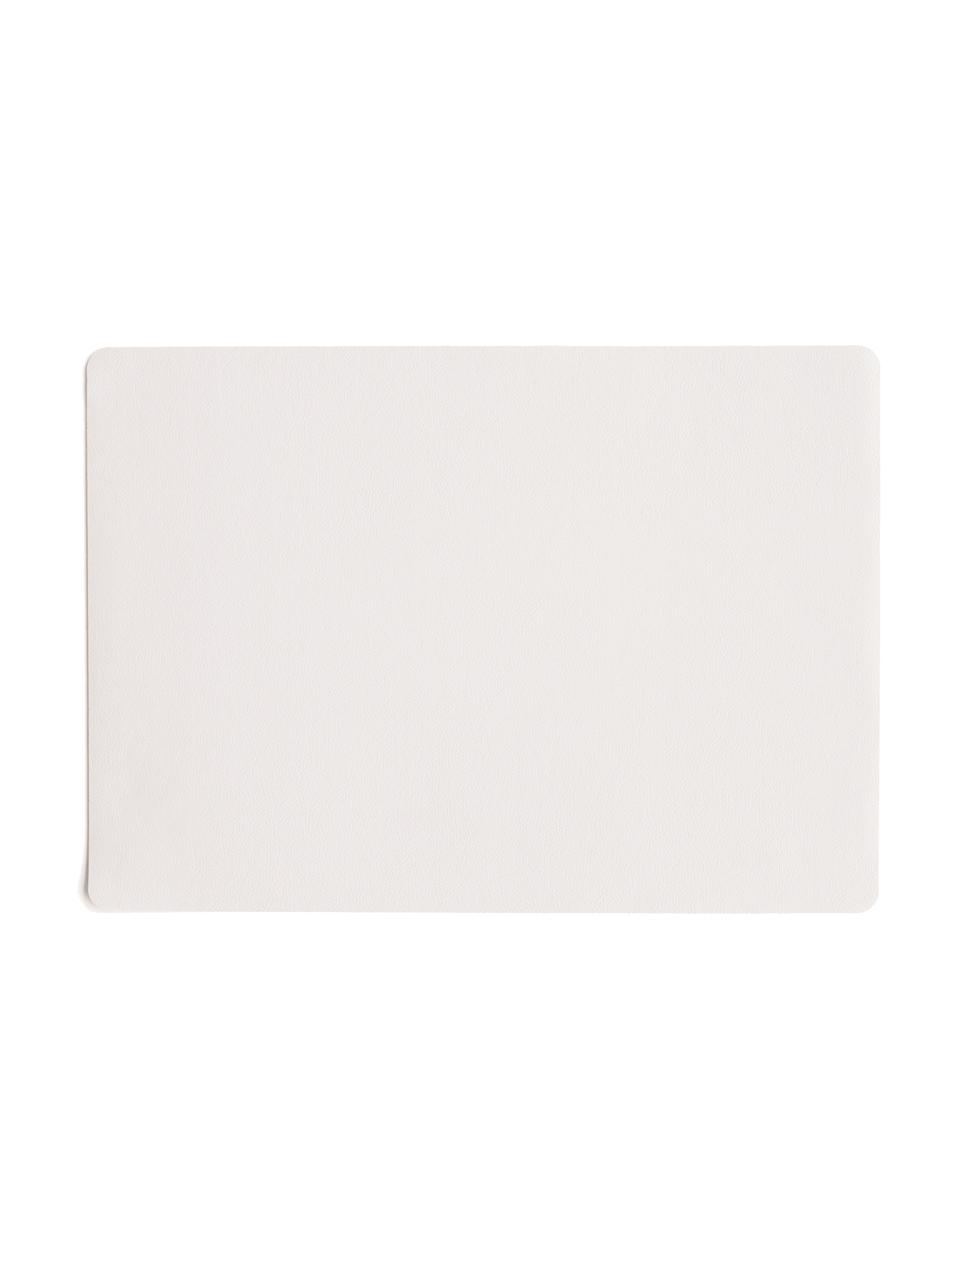 Podkładka ze sztucznej skóry Pik, 2 szt., Tworzywo sztuczne (PVC), Biały, S 33 x D 46 cm